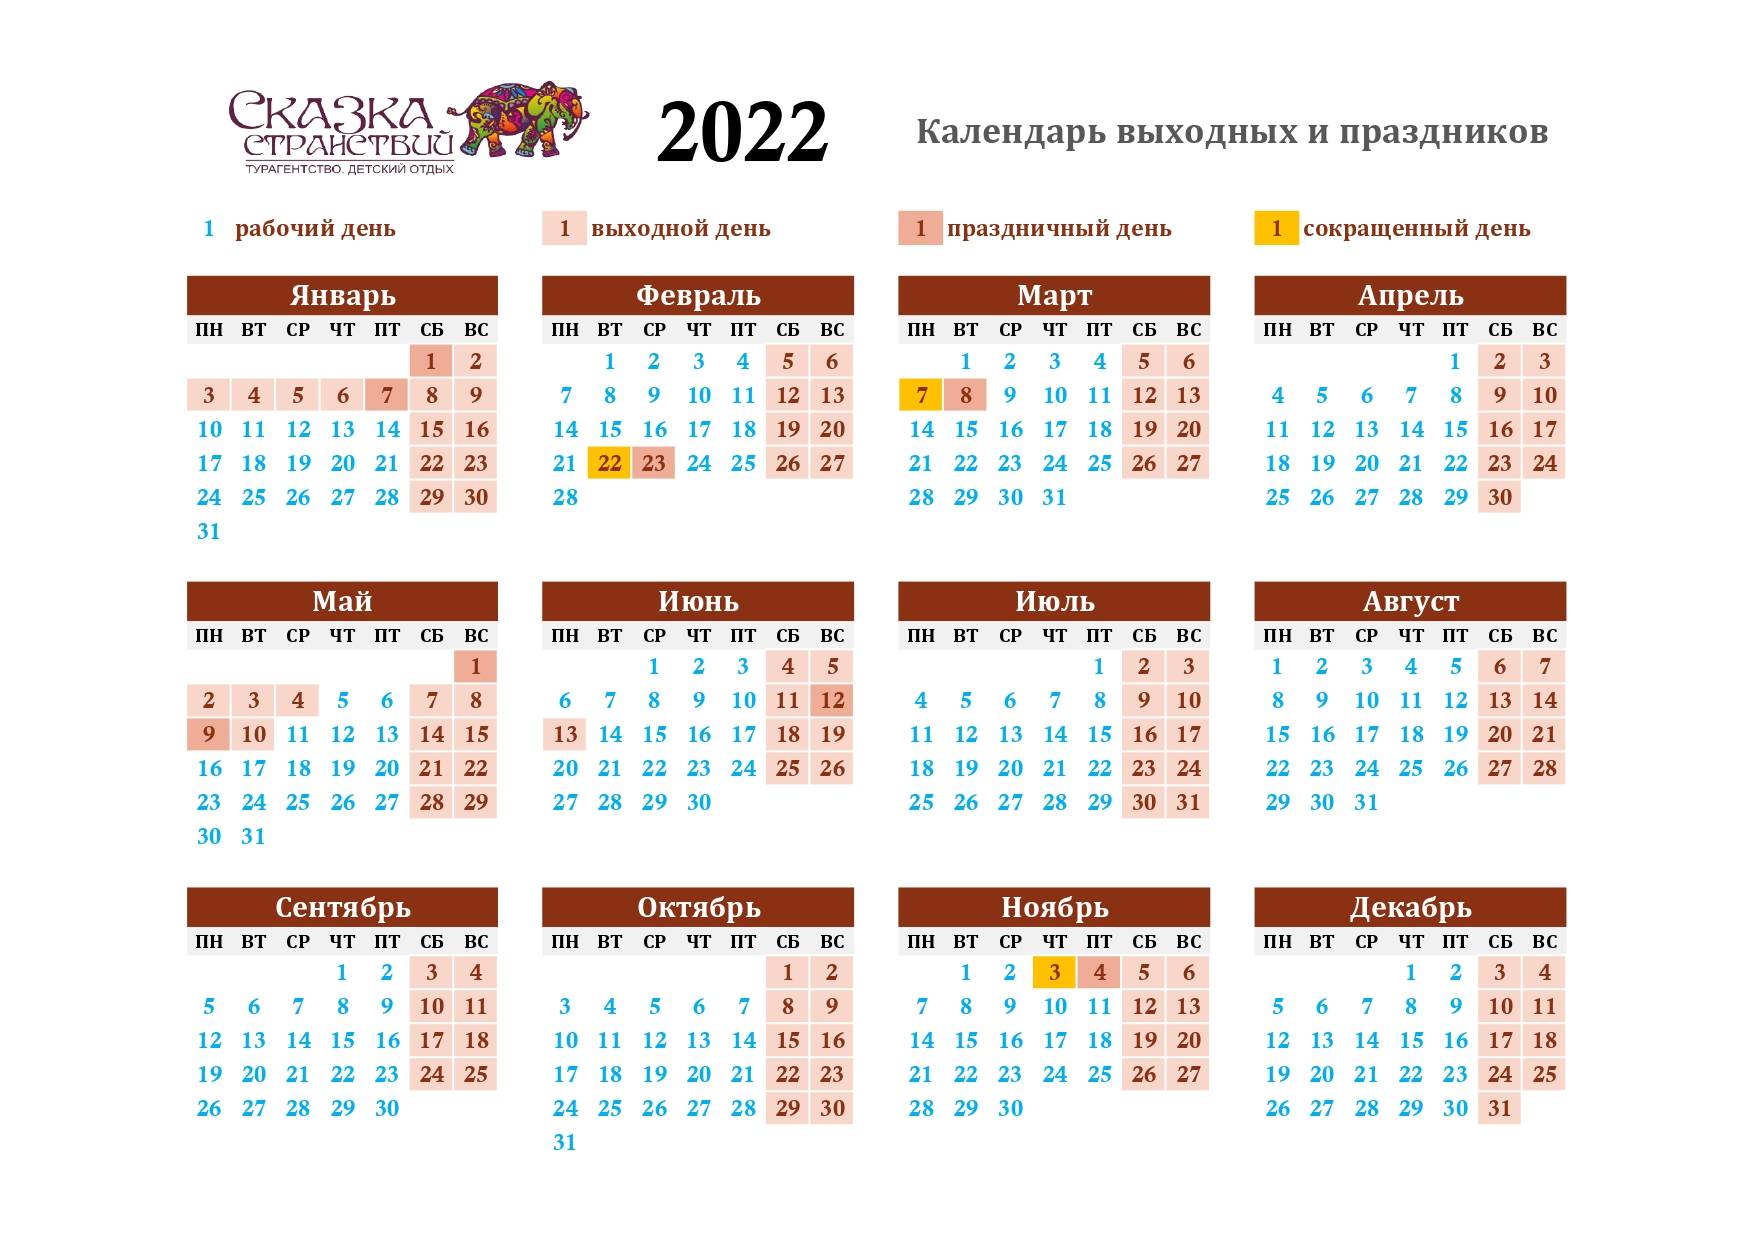 Производственный календарь 2022 - выходные и праздничные дни